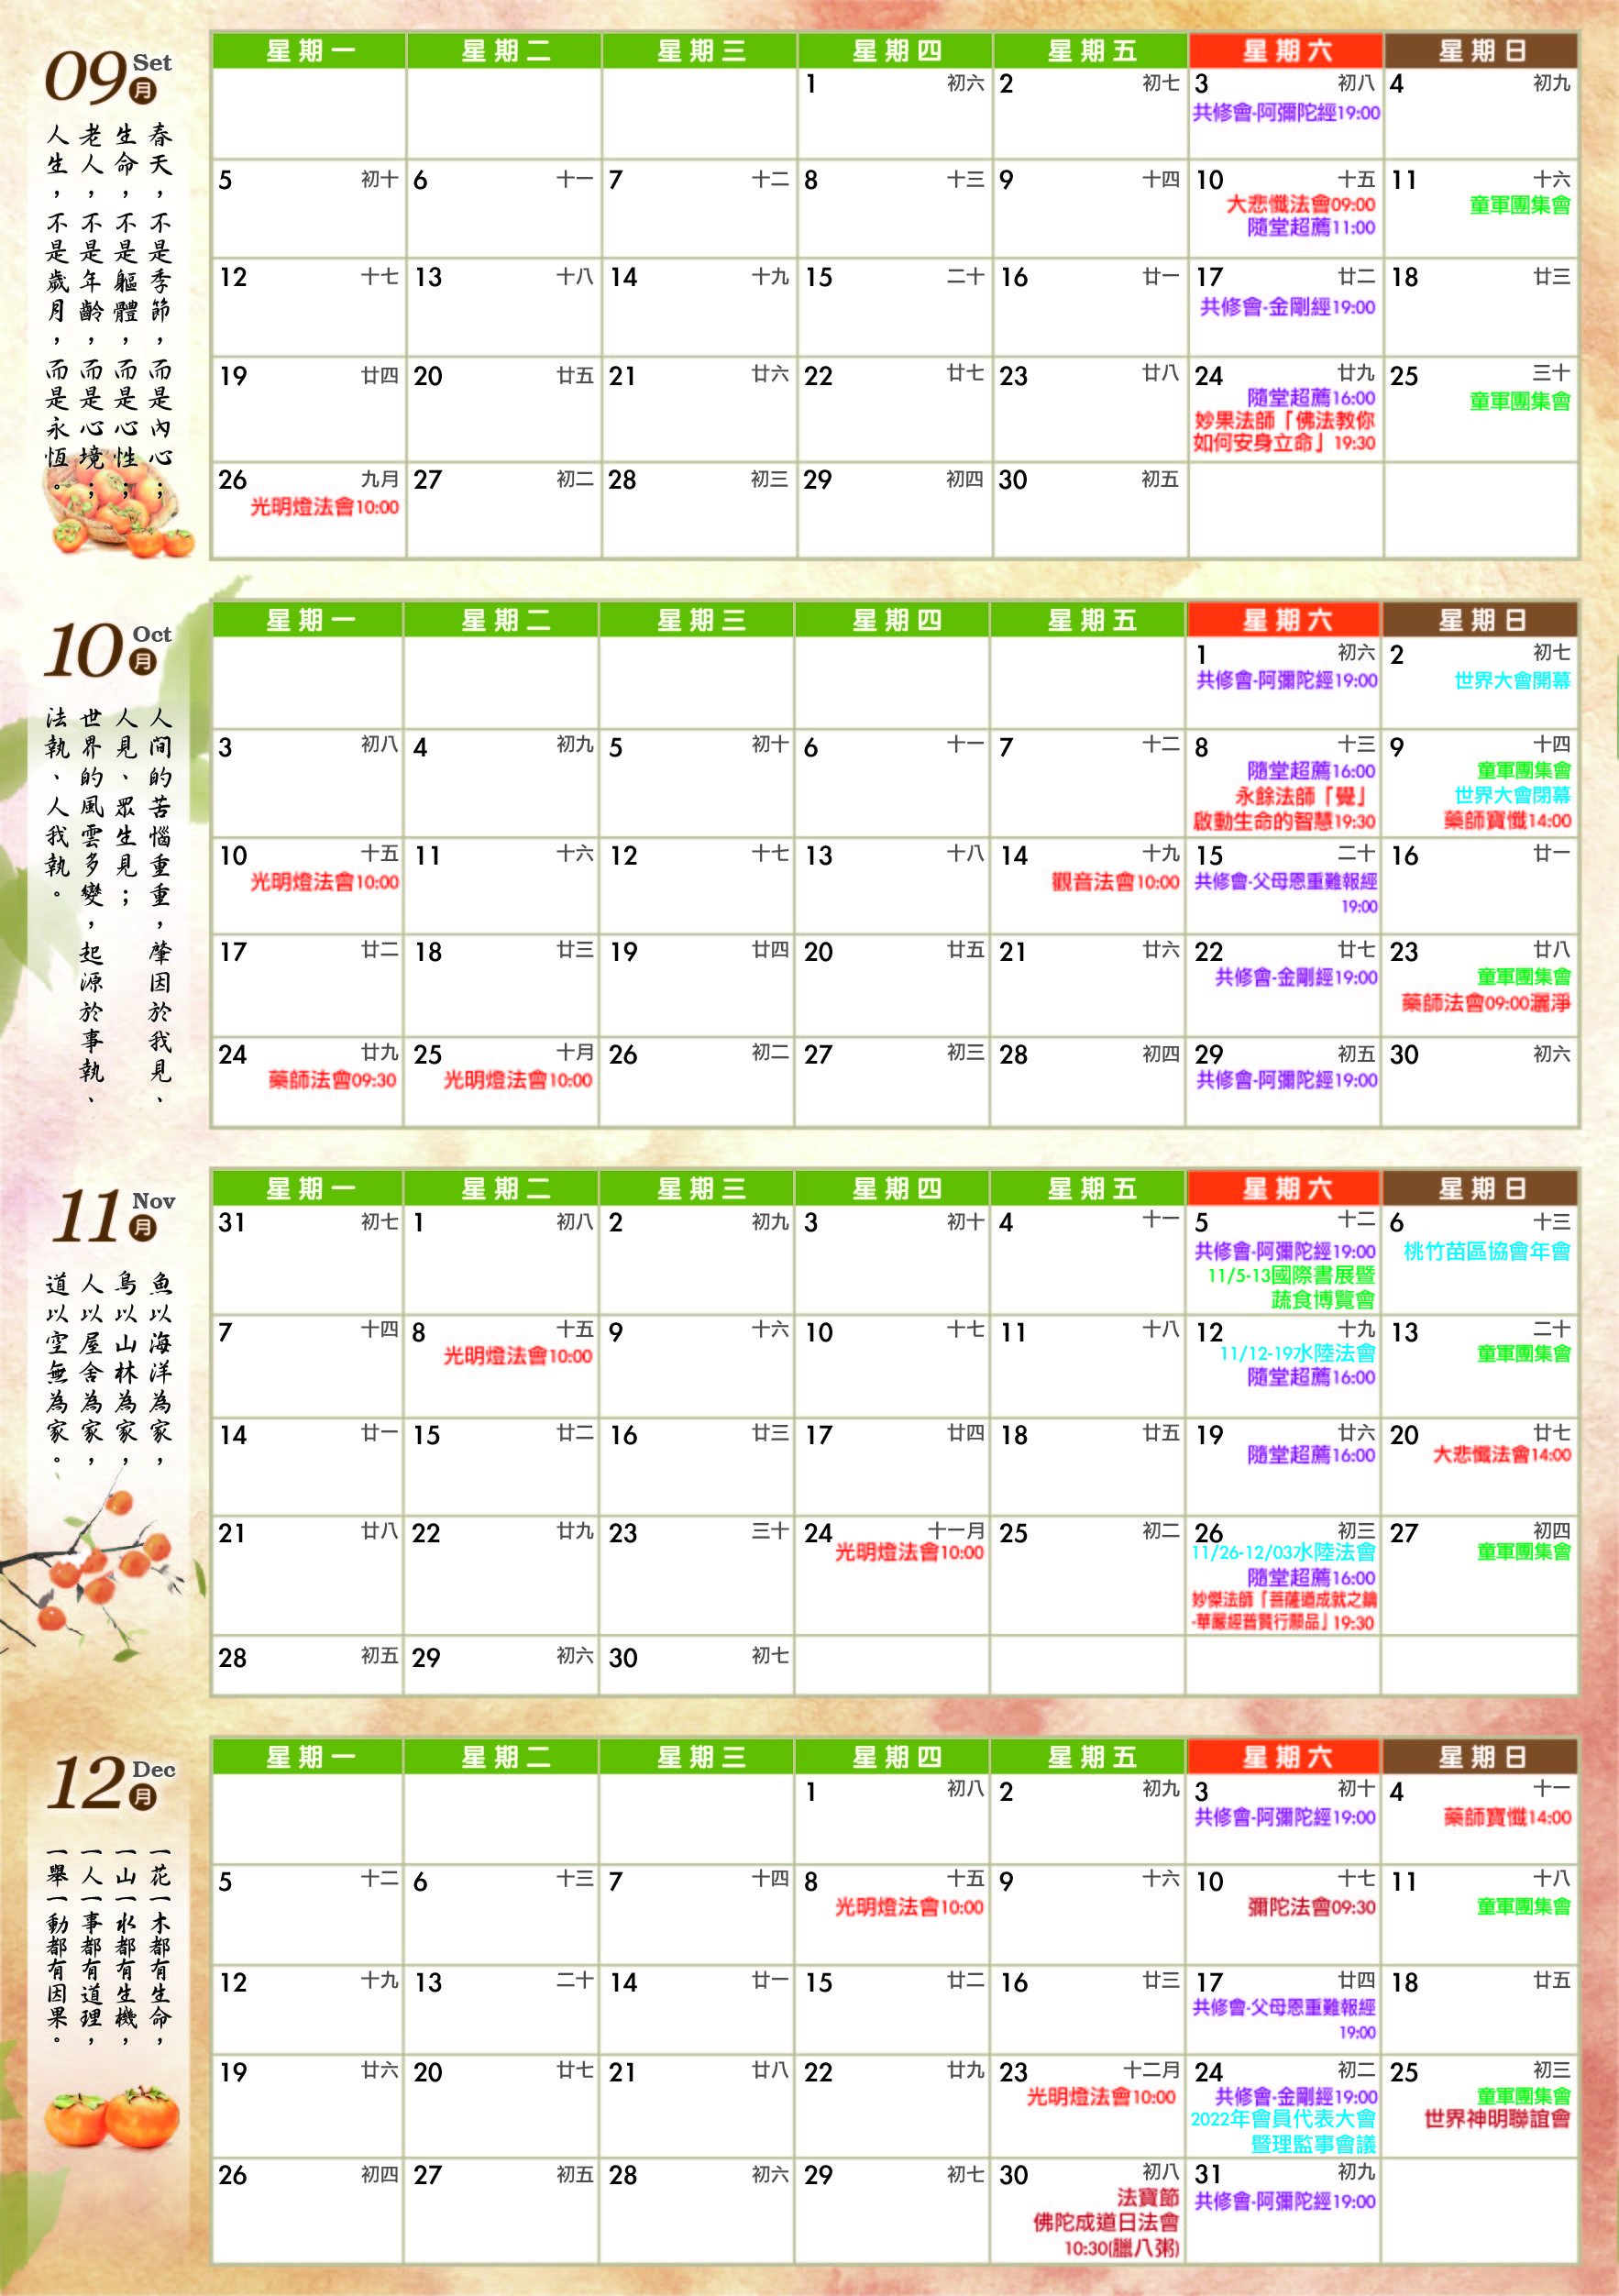 竹東大覺寺(妙淳法師)-2022年9-12月行事曆-02.jpg